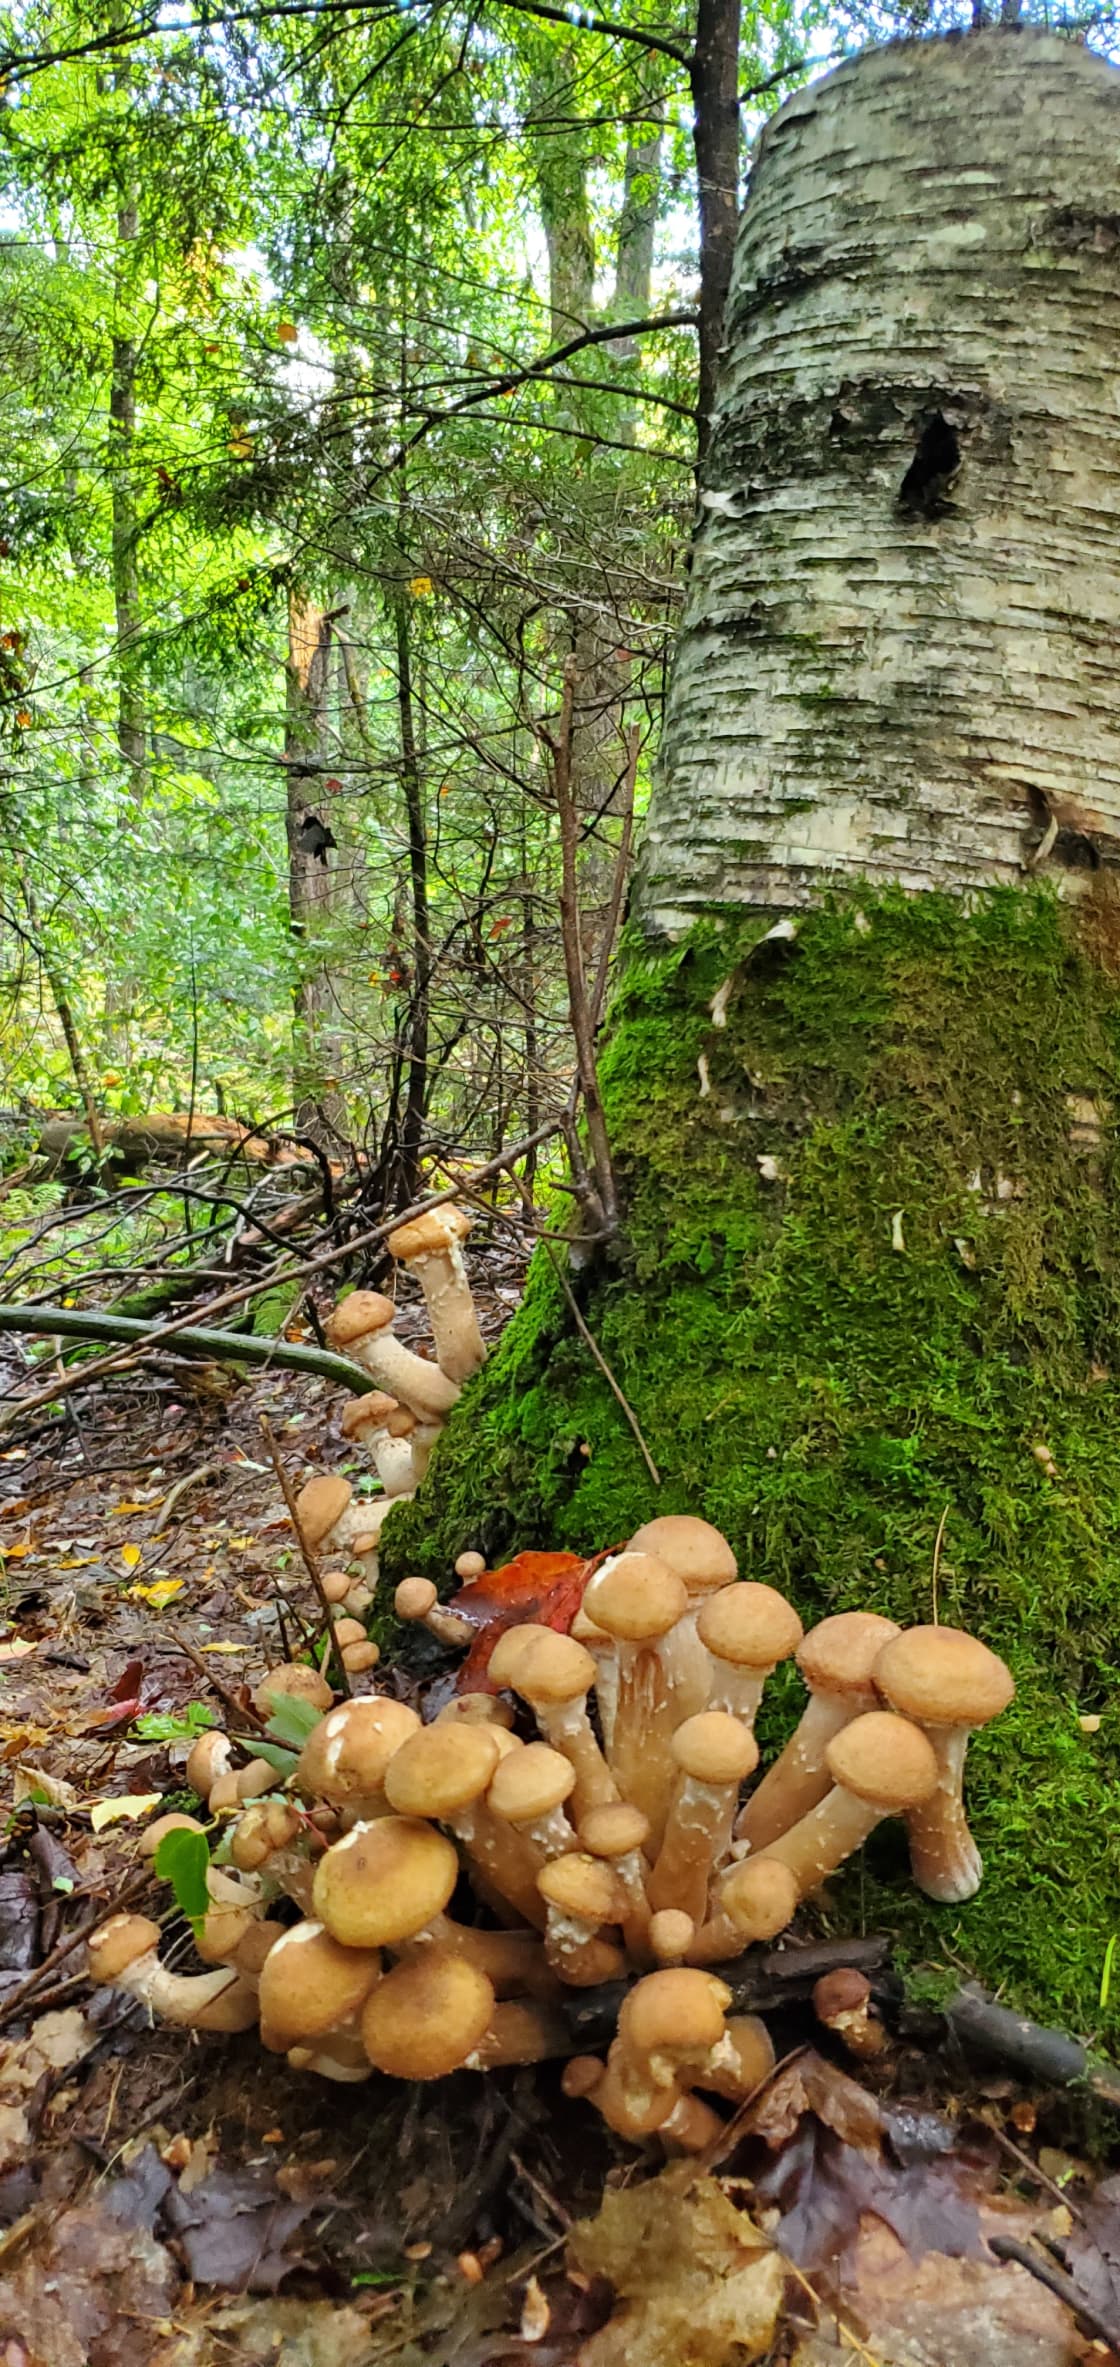 More mushrooms 